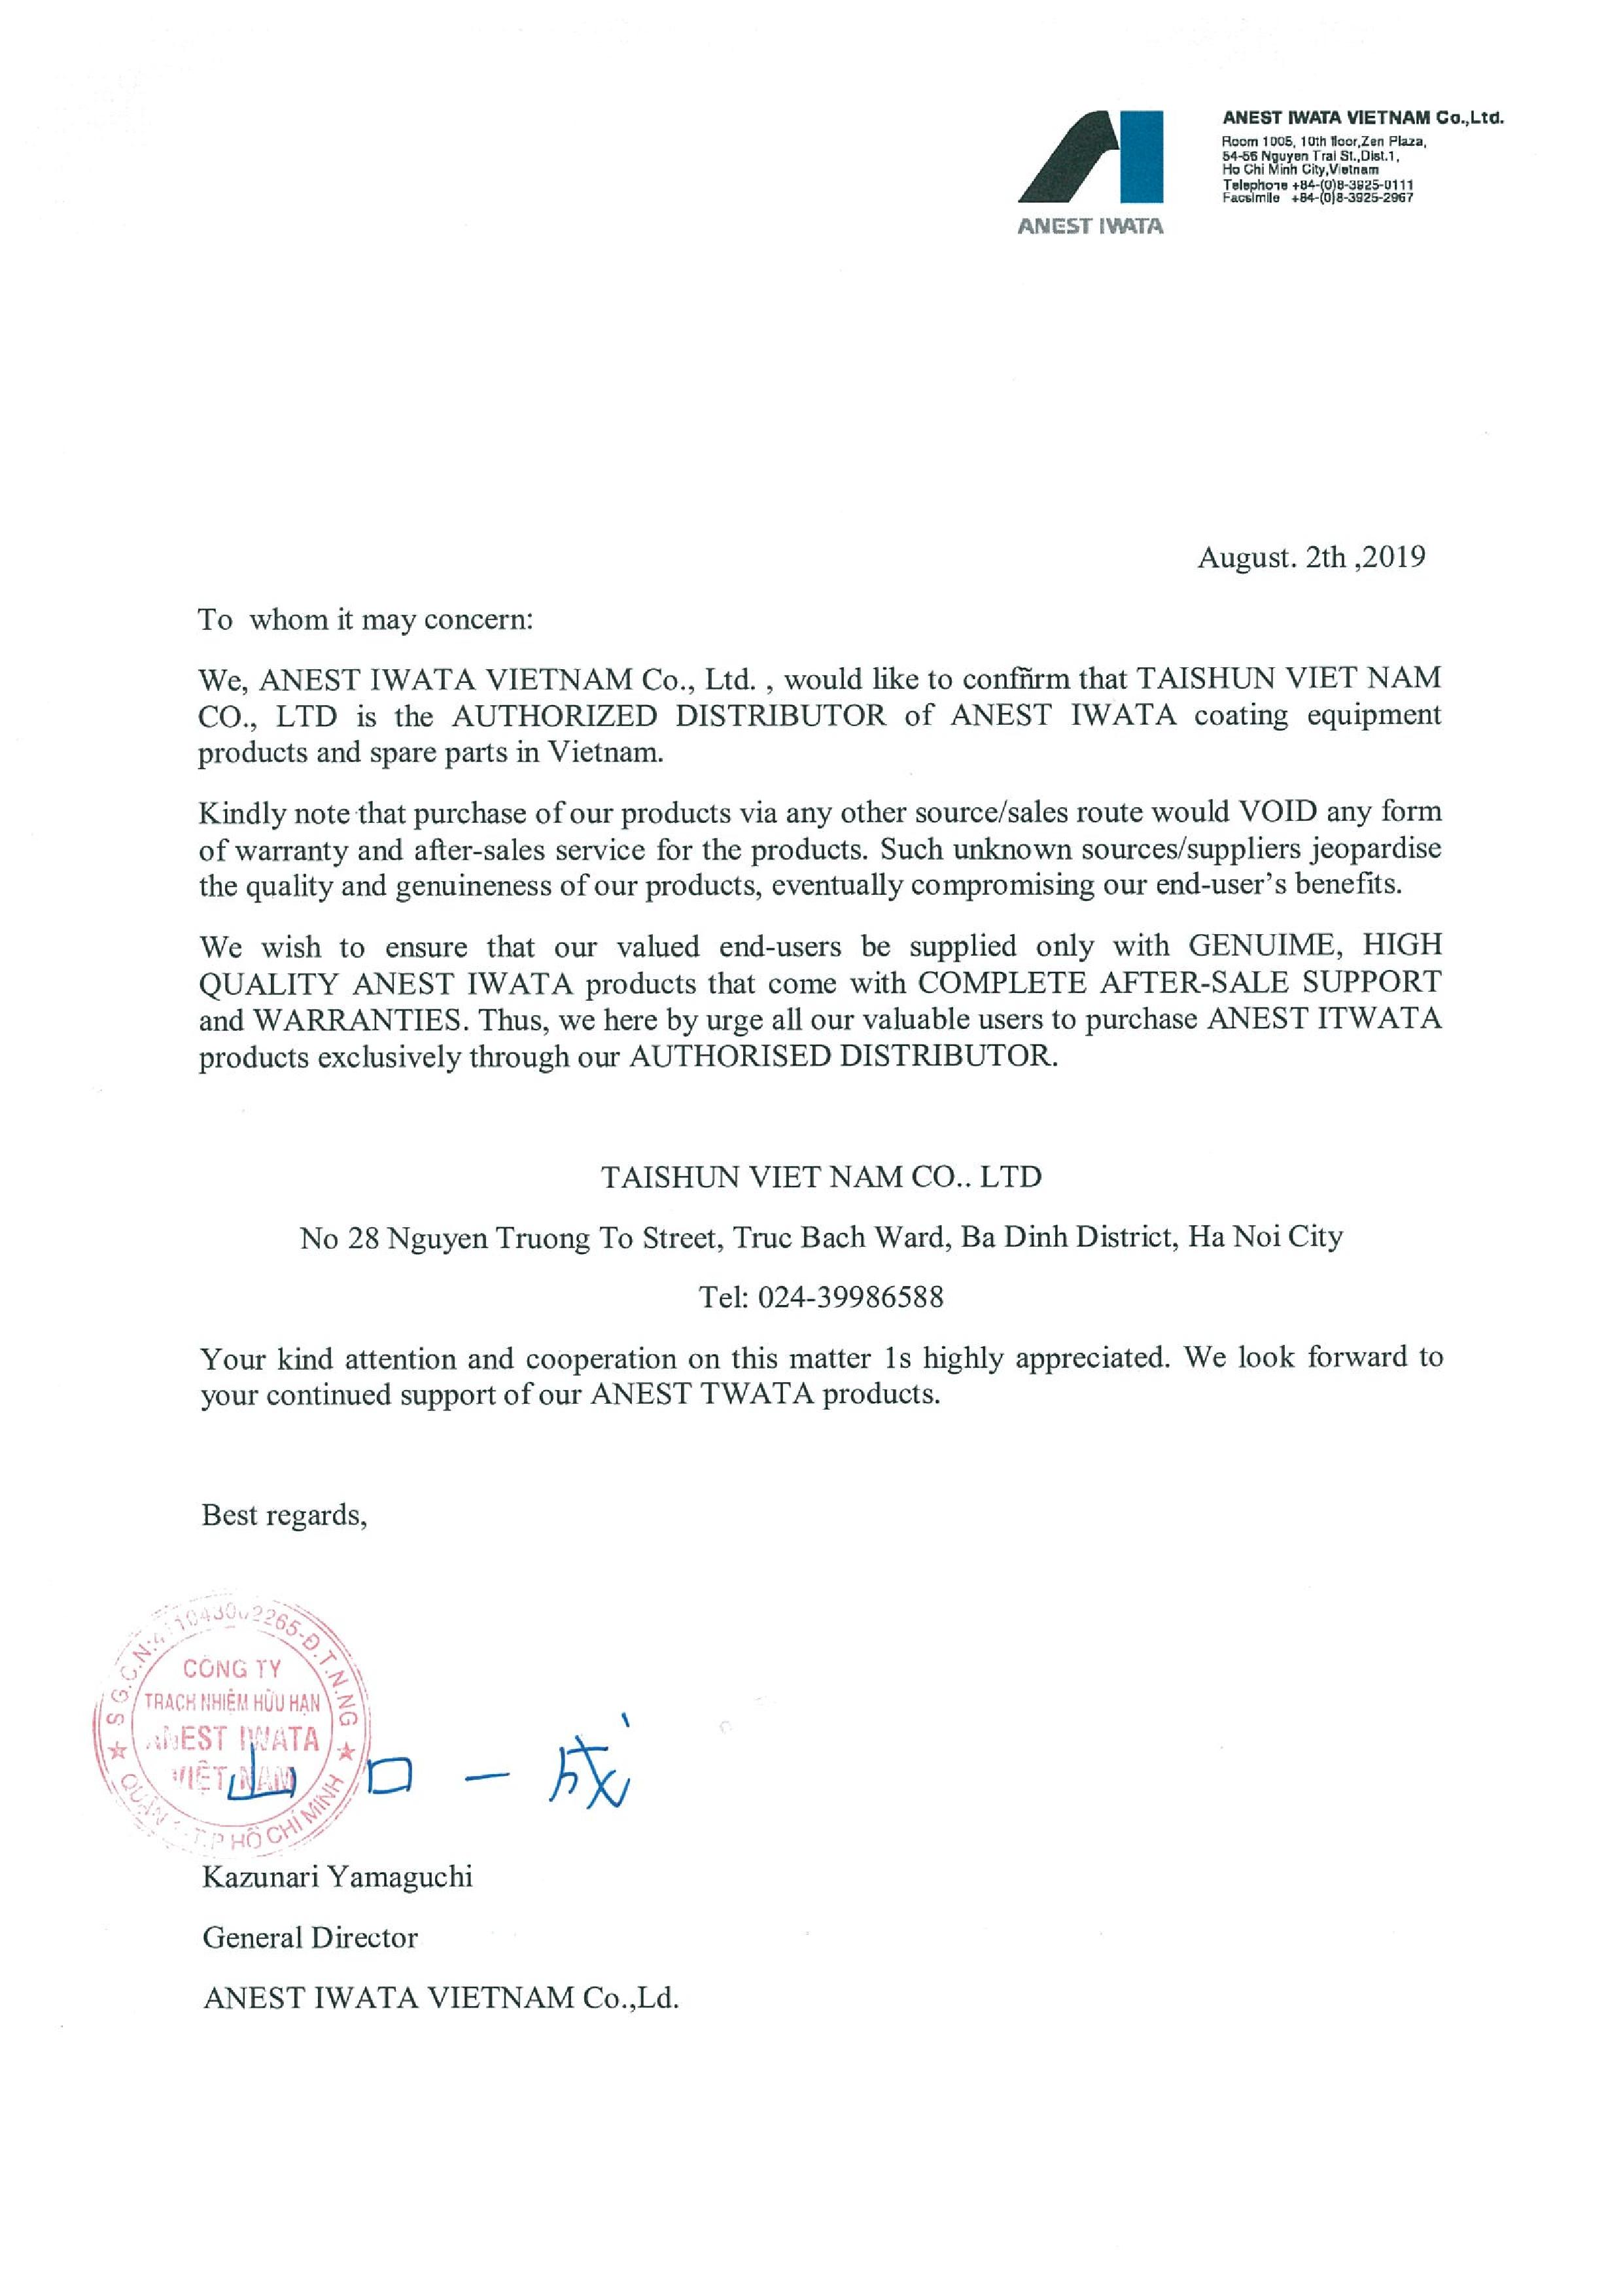 Taishun Việt Nam trở thành nhà phân phối ủy quyền của Anest Iwata